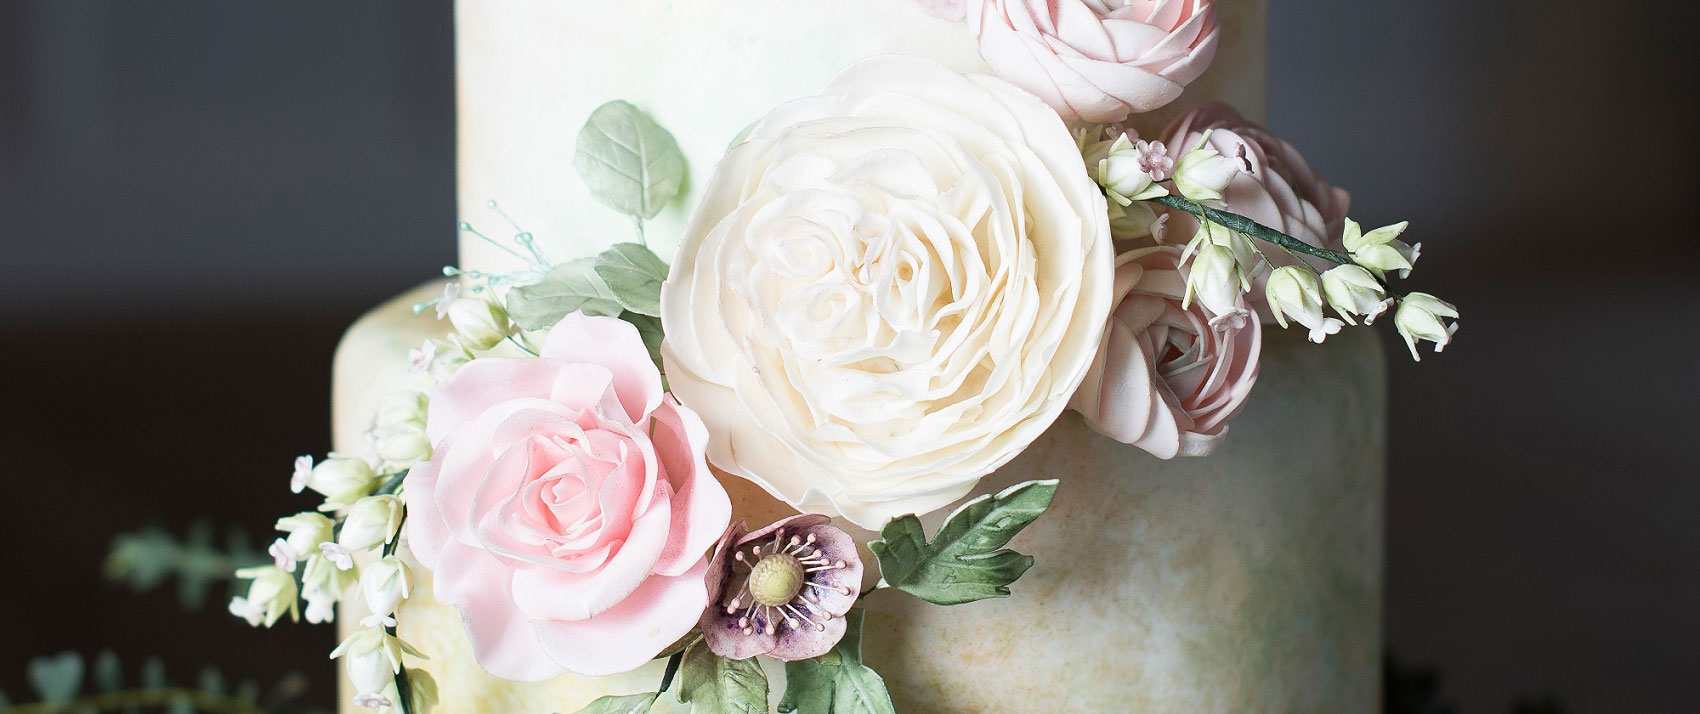 Wedding Cake Floral Details